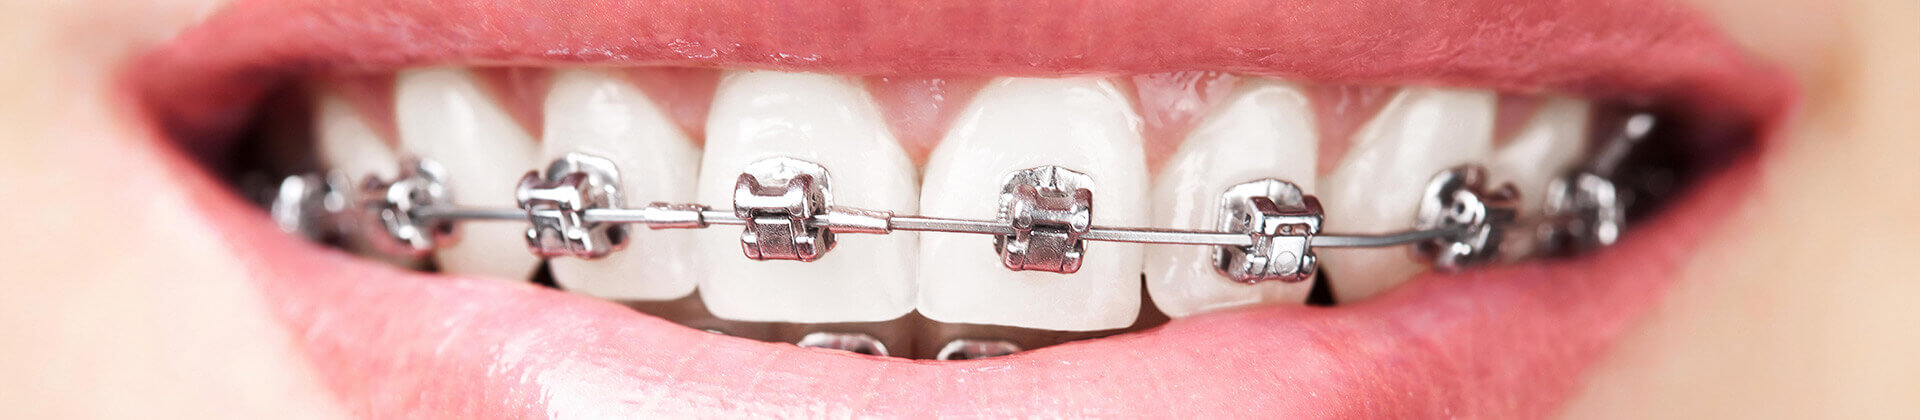 aparaty stałe ortodontyczne